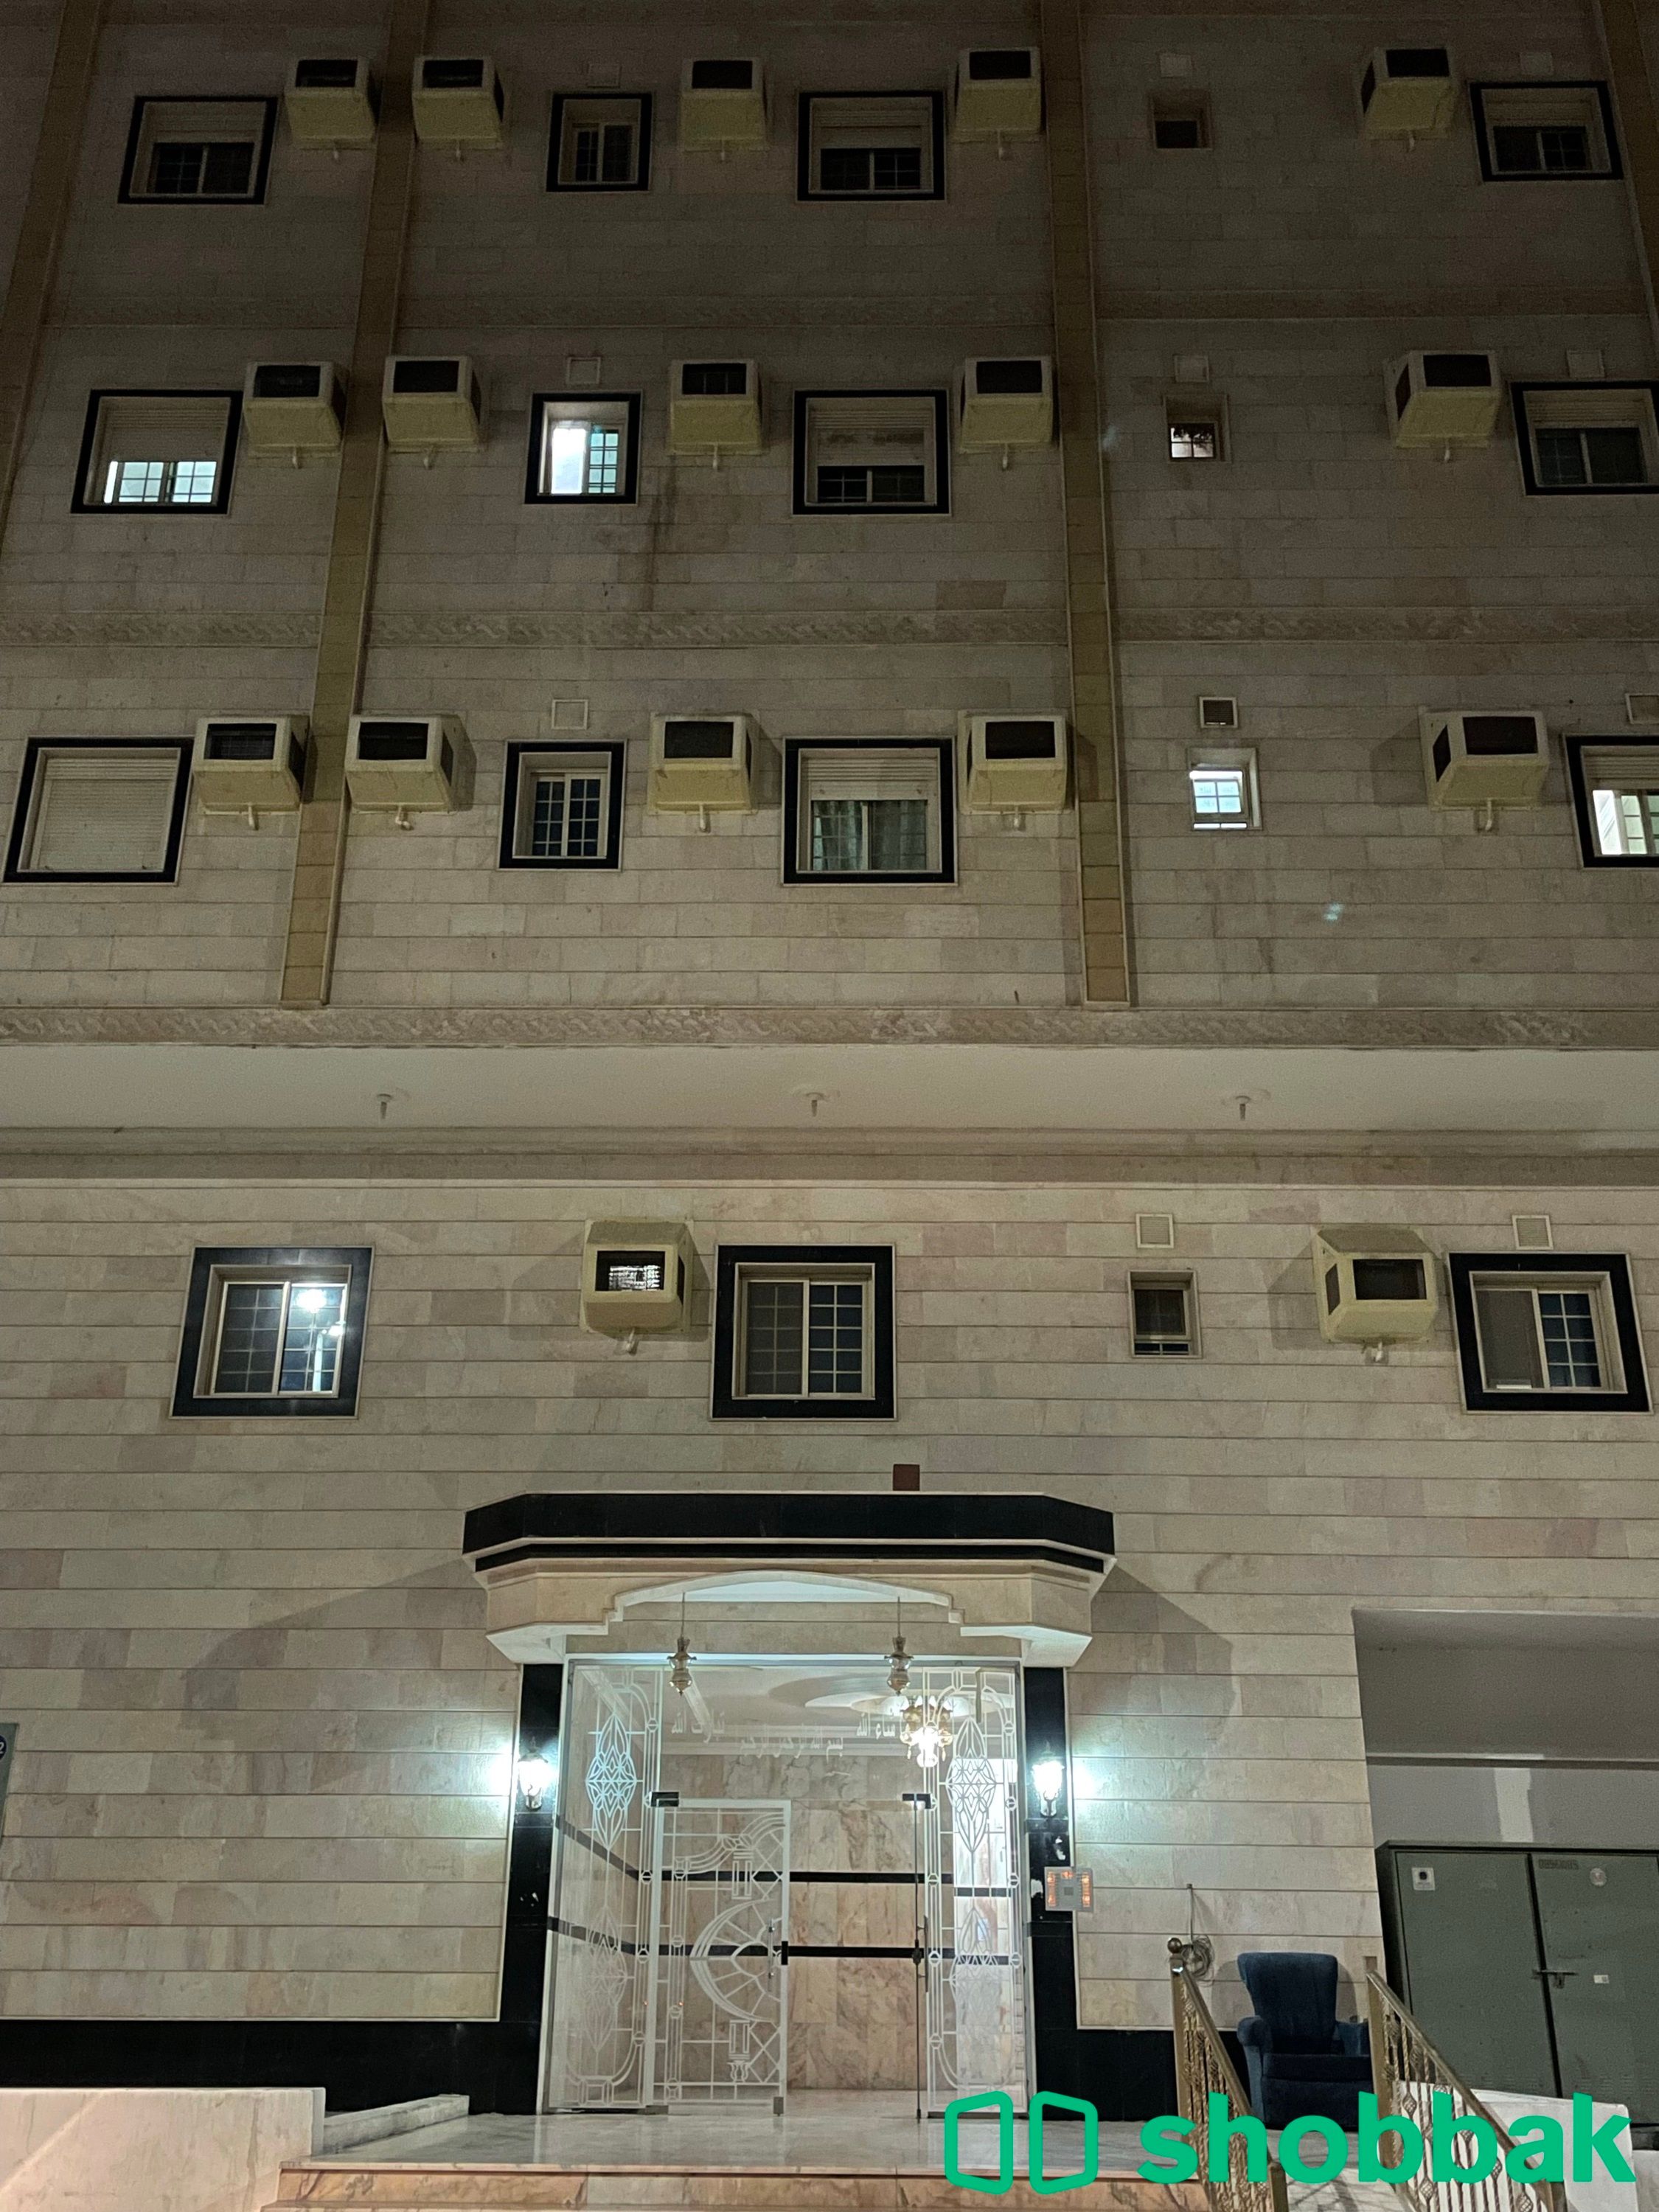 شقة رقم (١٤)  للإيجار - حي الصفا Shobbak Saudi Arabia